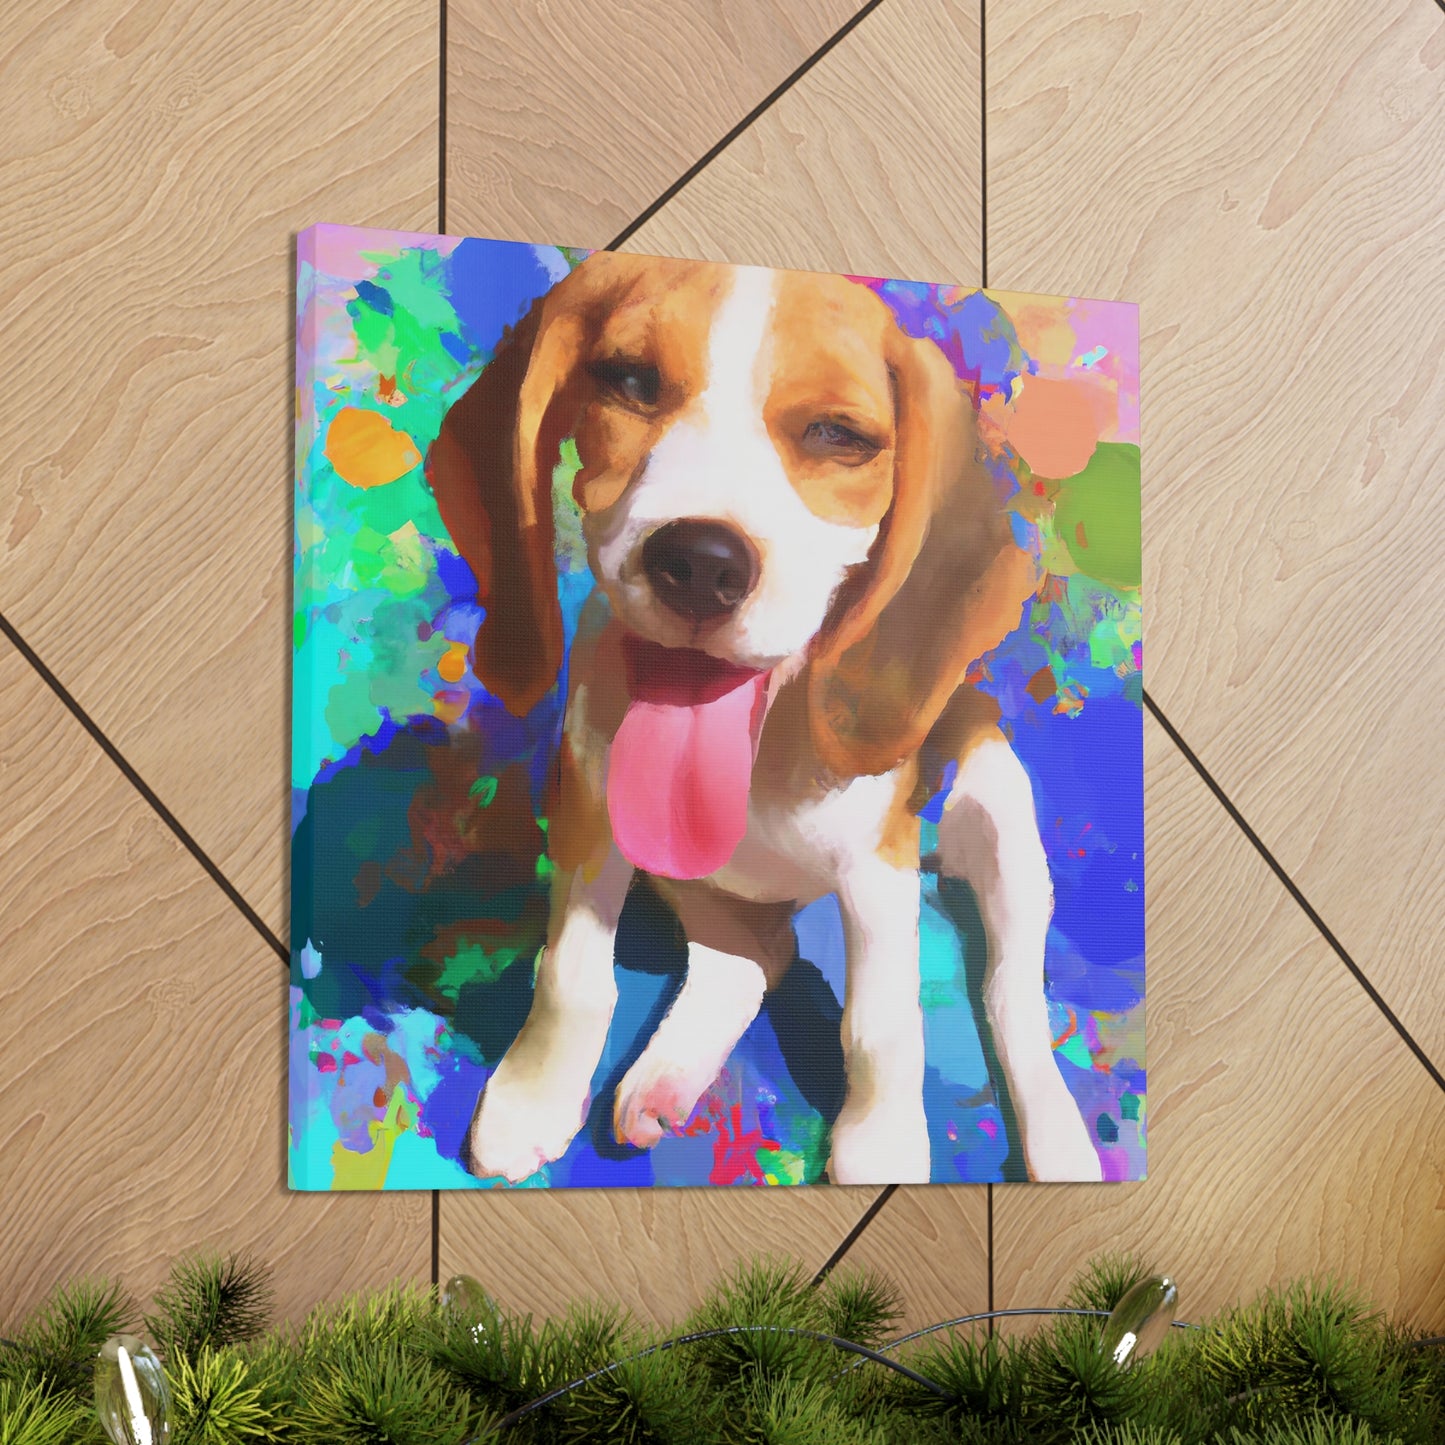 Prince/Princess Delana of the Van Gheyns. - Beagle Puppy - Canvas